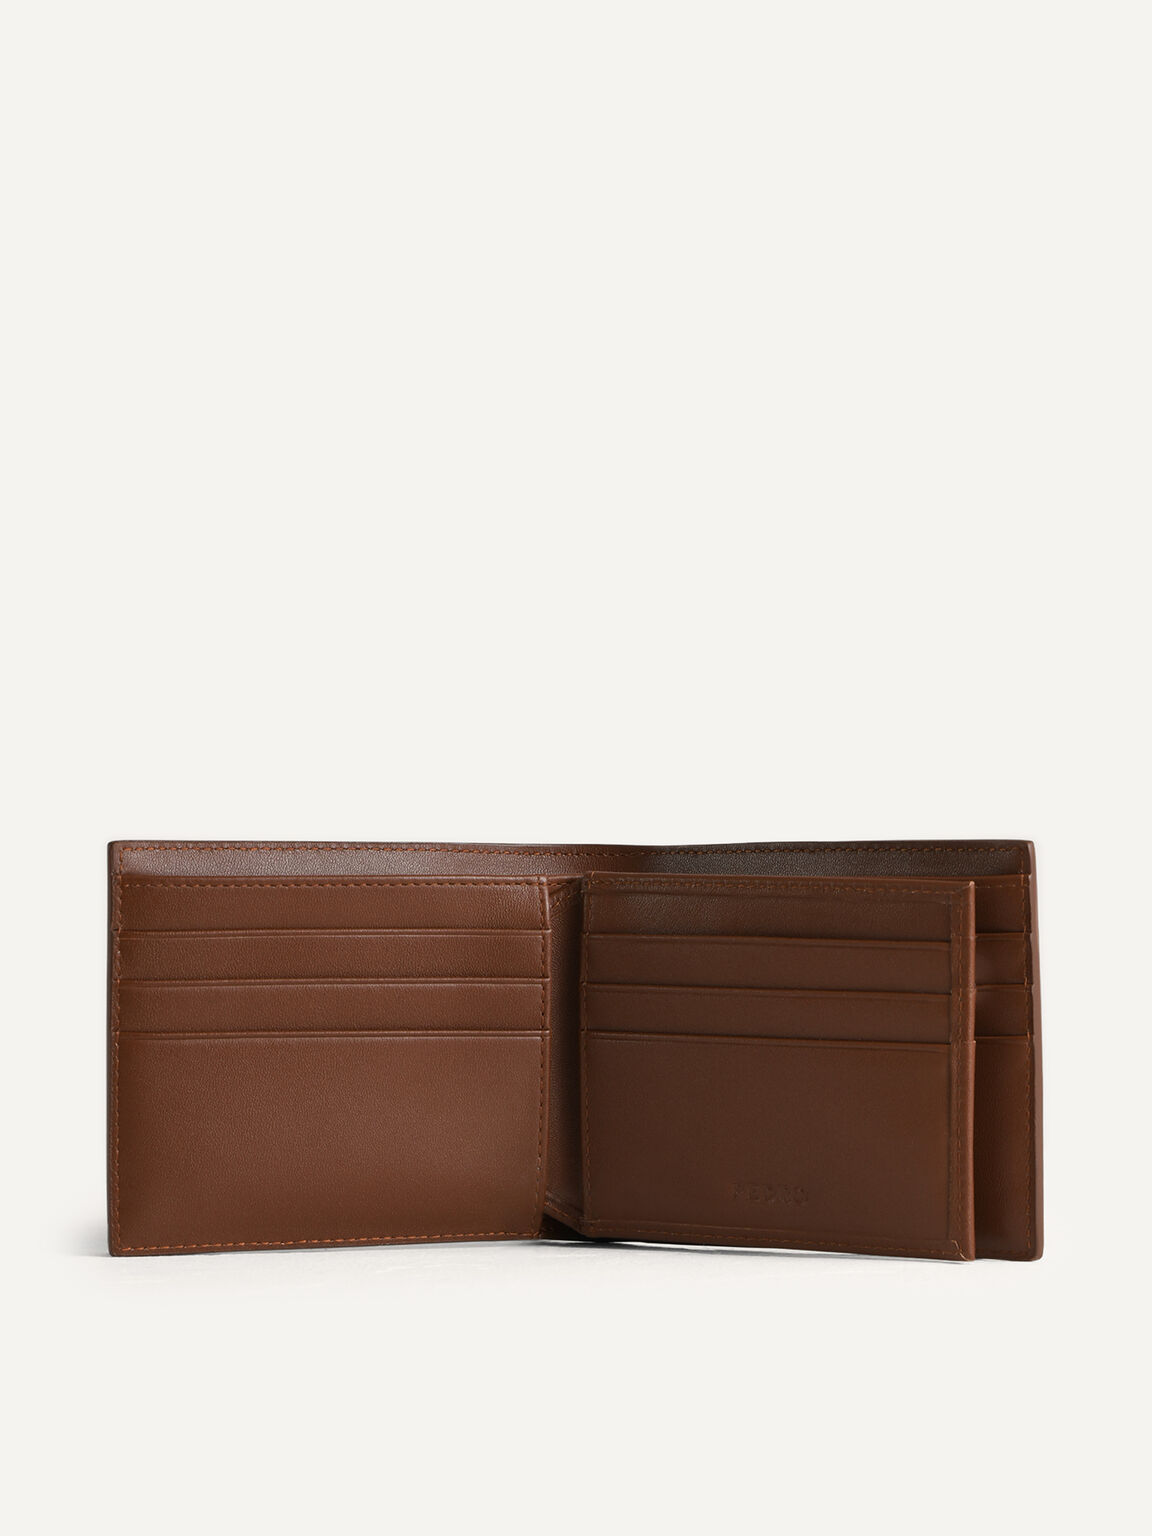 Leather Bi-Fold with Flip, Cognac